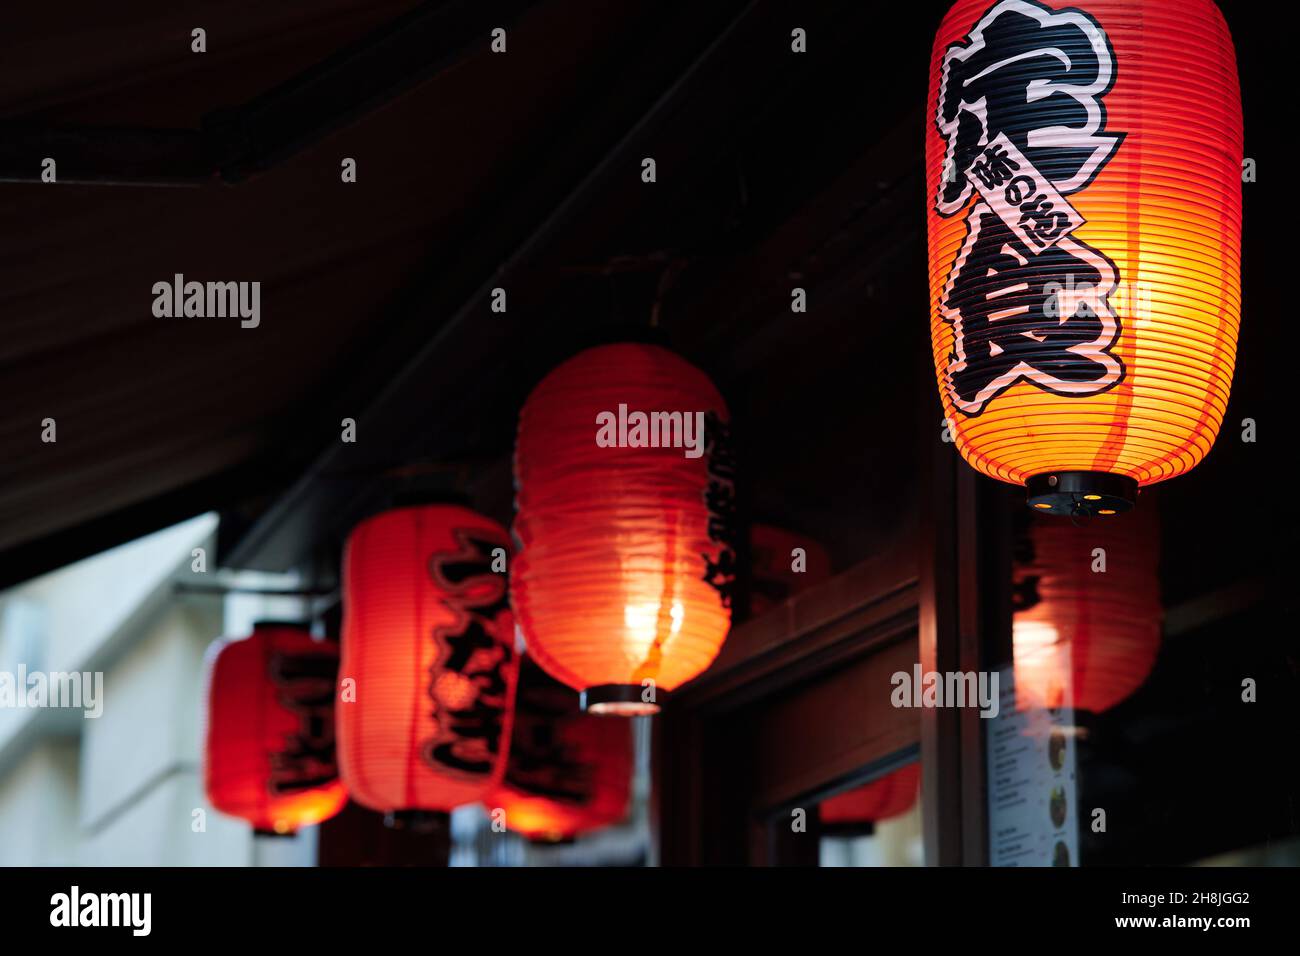 29 Nov 2021 - londonuk: Red lanterns outside japanese restaurant Stock Photo